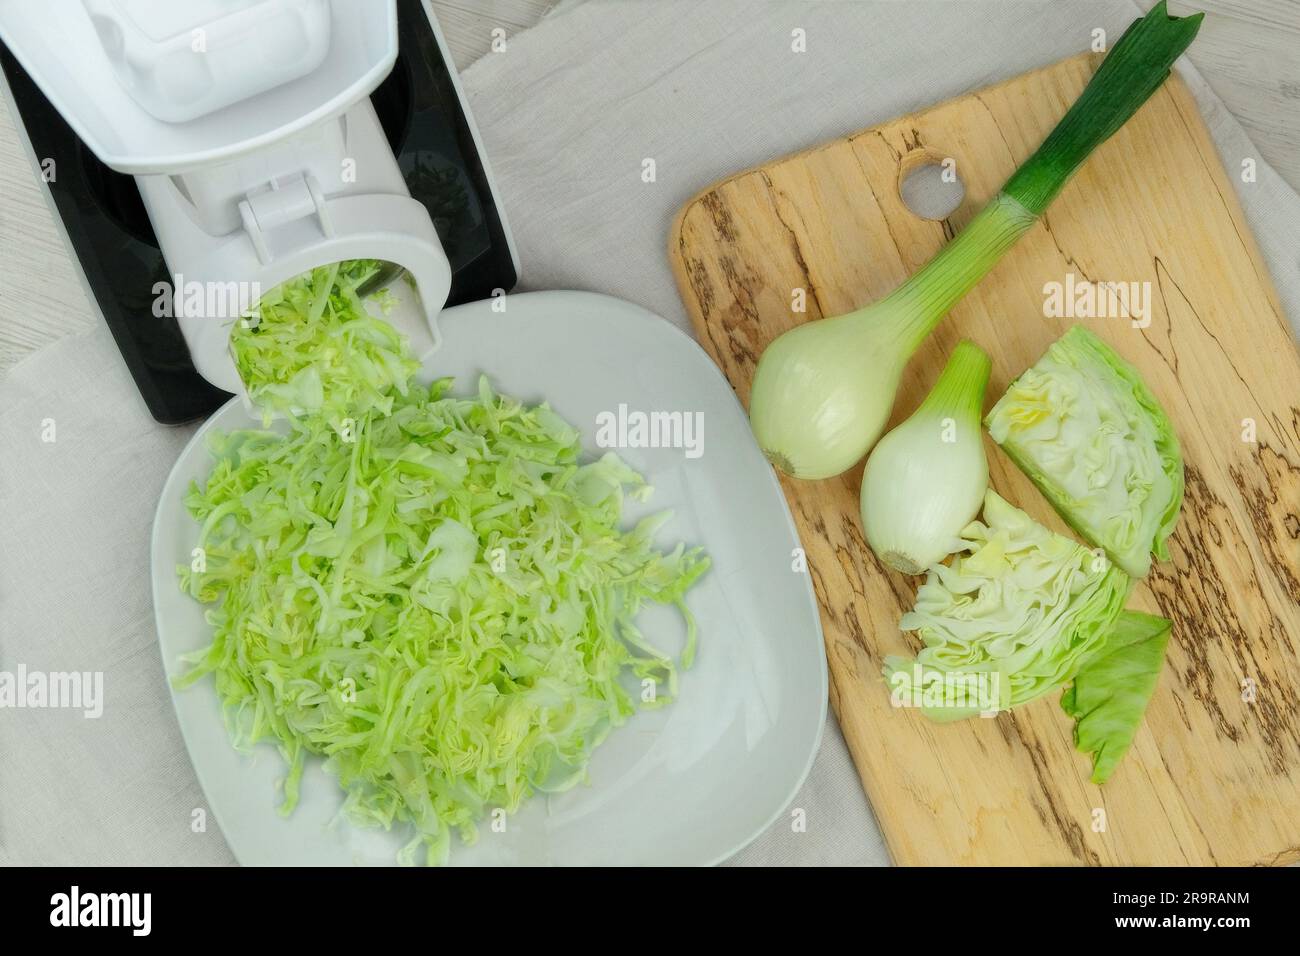 Cavolo in una taglierina per verdure sul tavolo da cucina. Il cavolo tritato sta cadendo in una ciotola. Cibo sano fatto in casa. Foto Stock